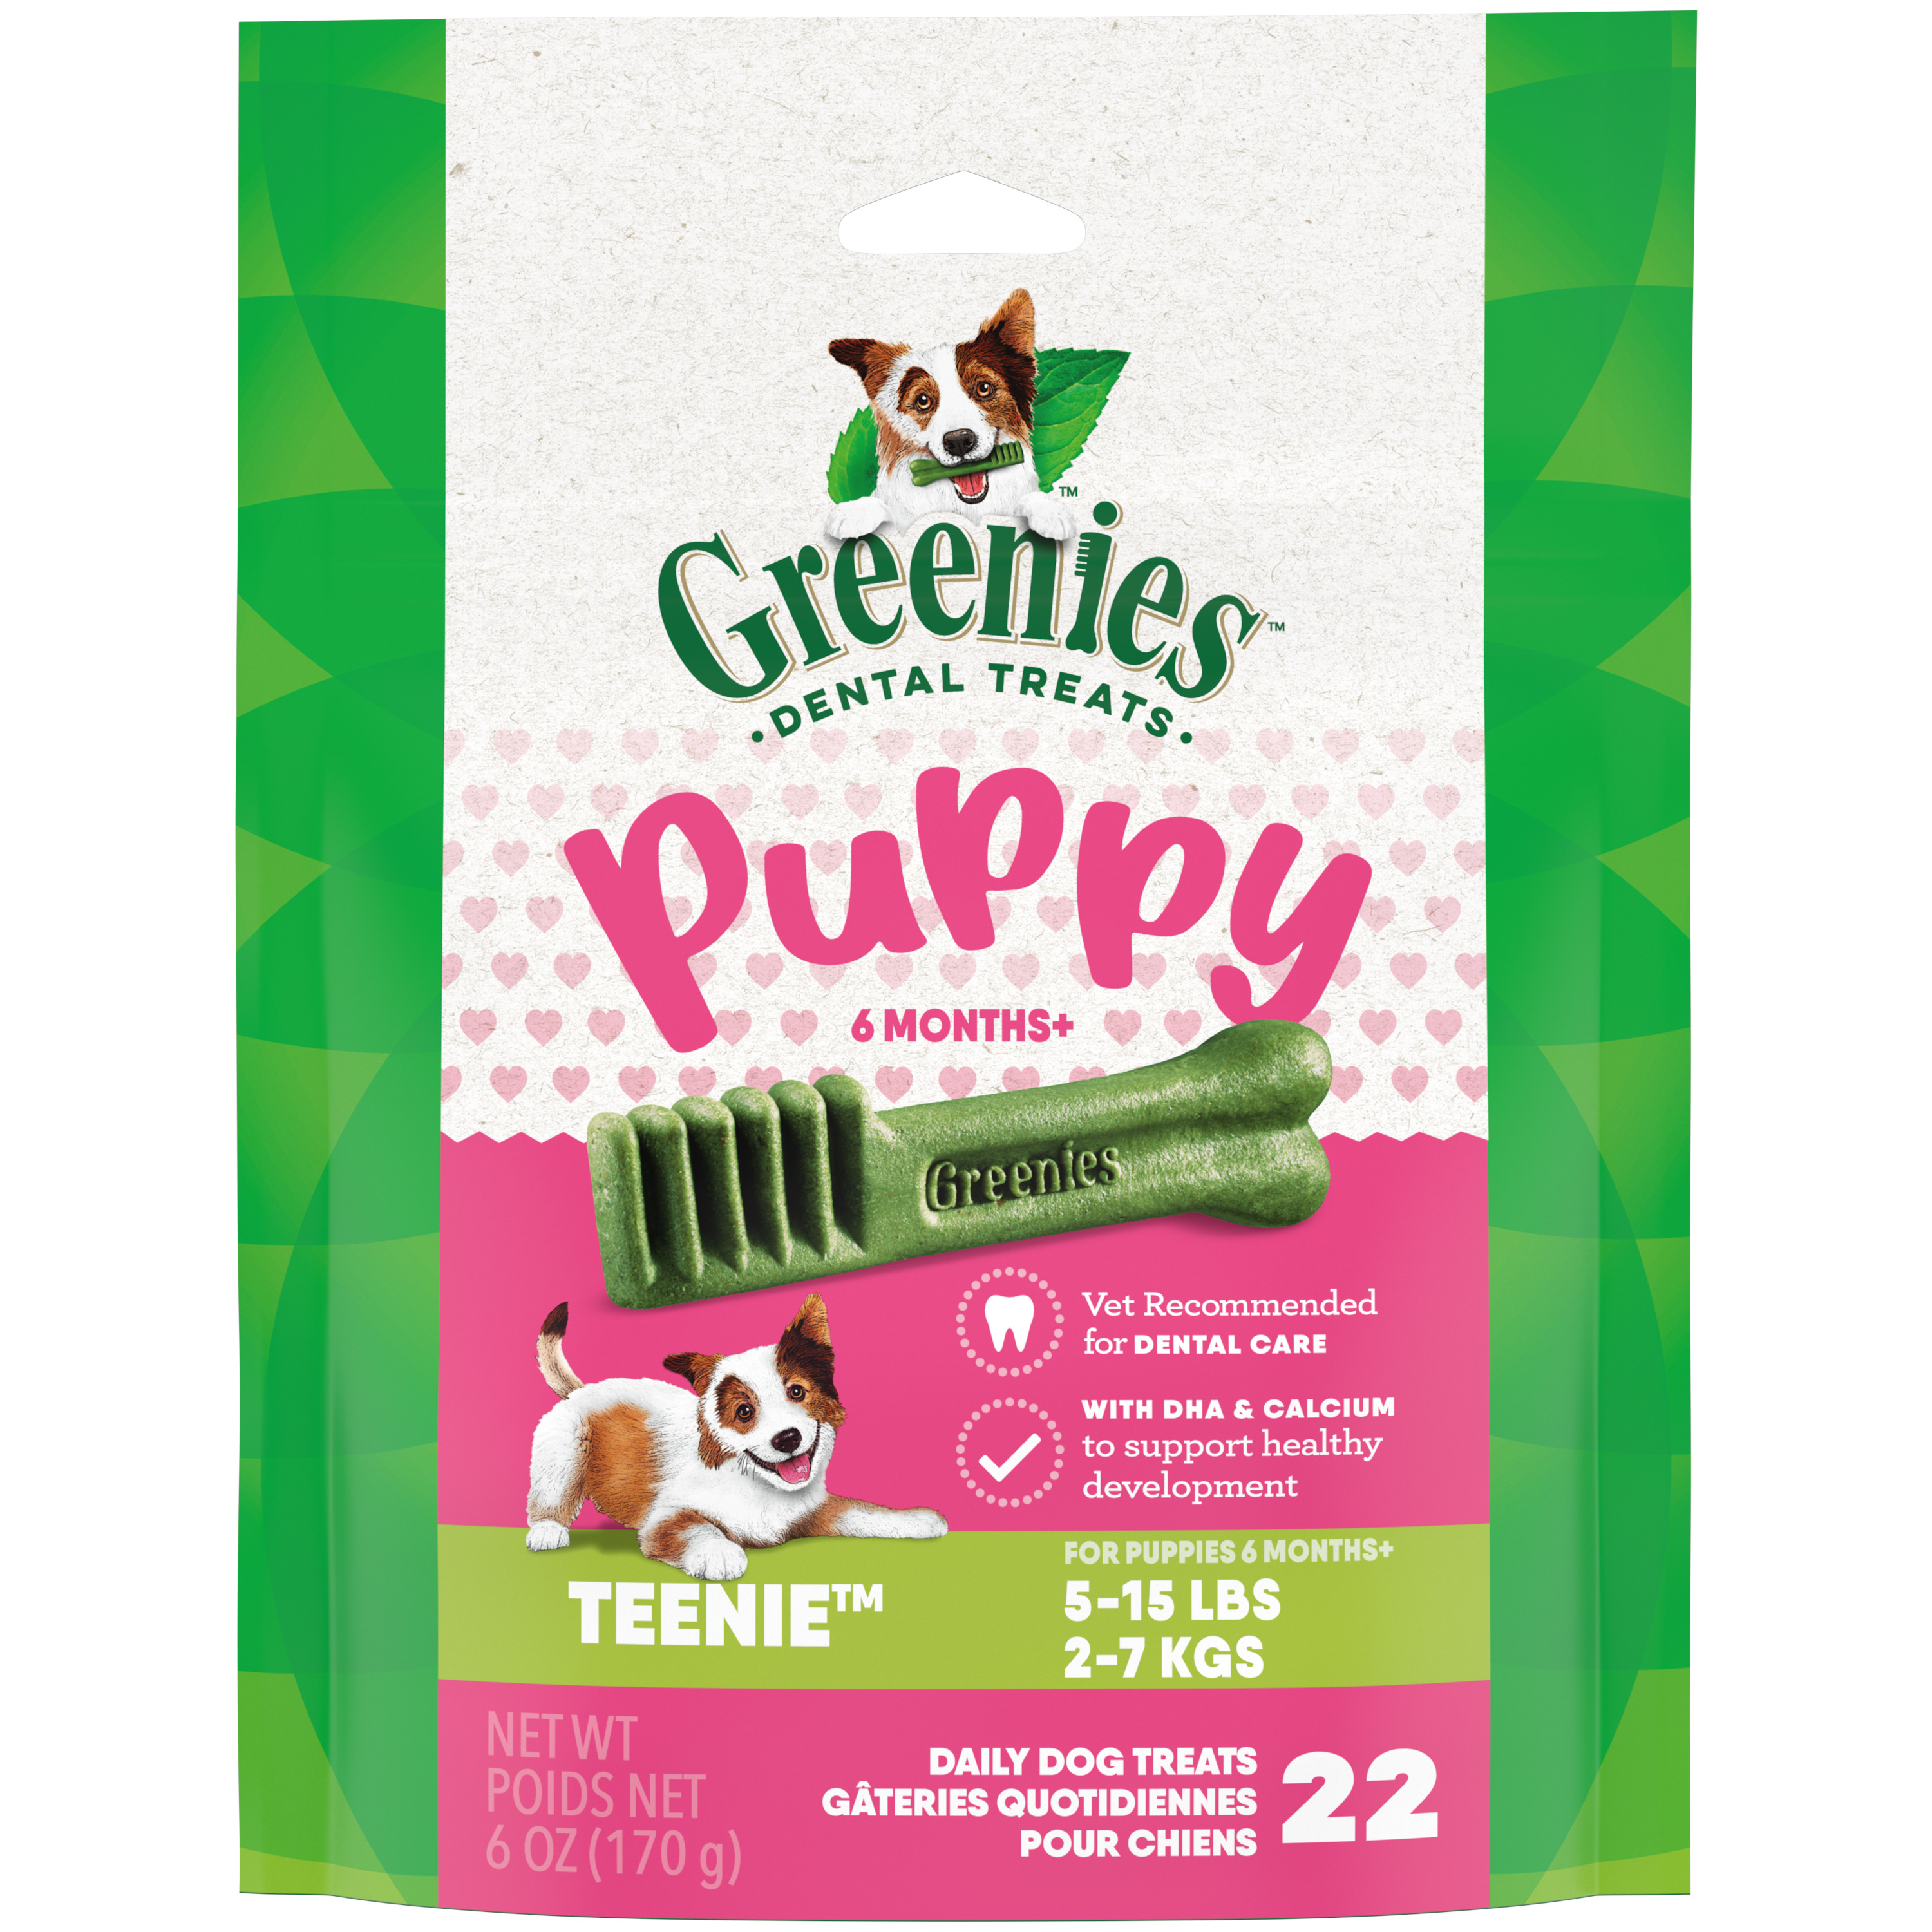 6oz Greenies PUPPY Teenie Mini Treat Pack - Health/First Aid